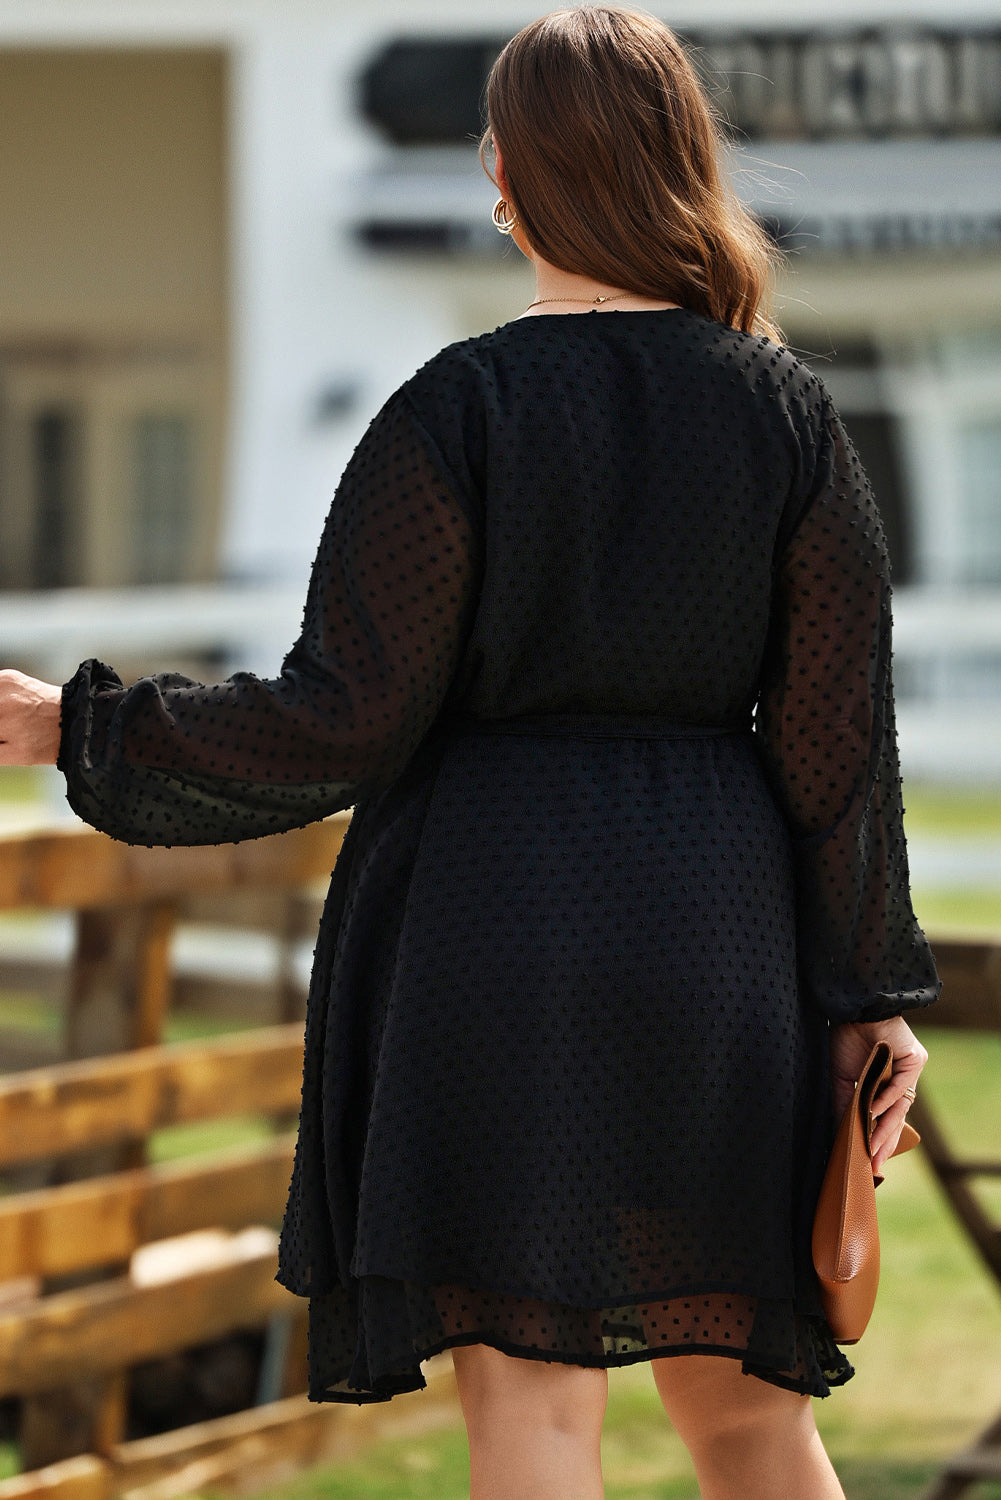 Crna švicarska haljina dugih rukava s V izrezom i točkicama veće veličine